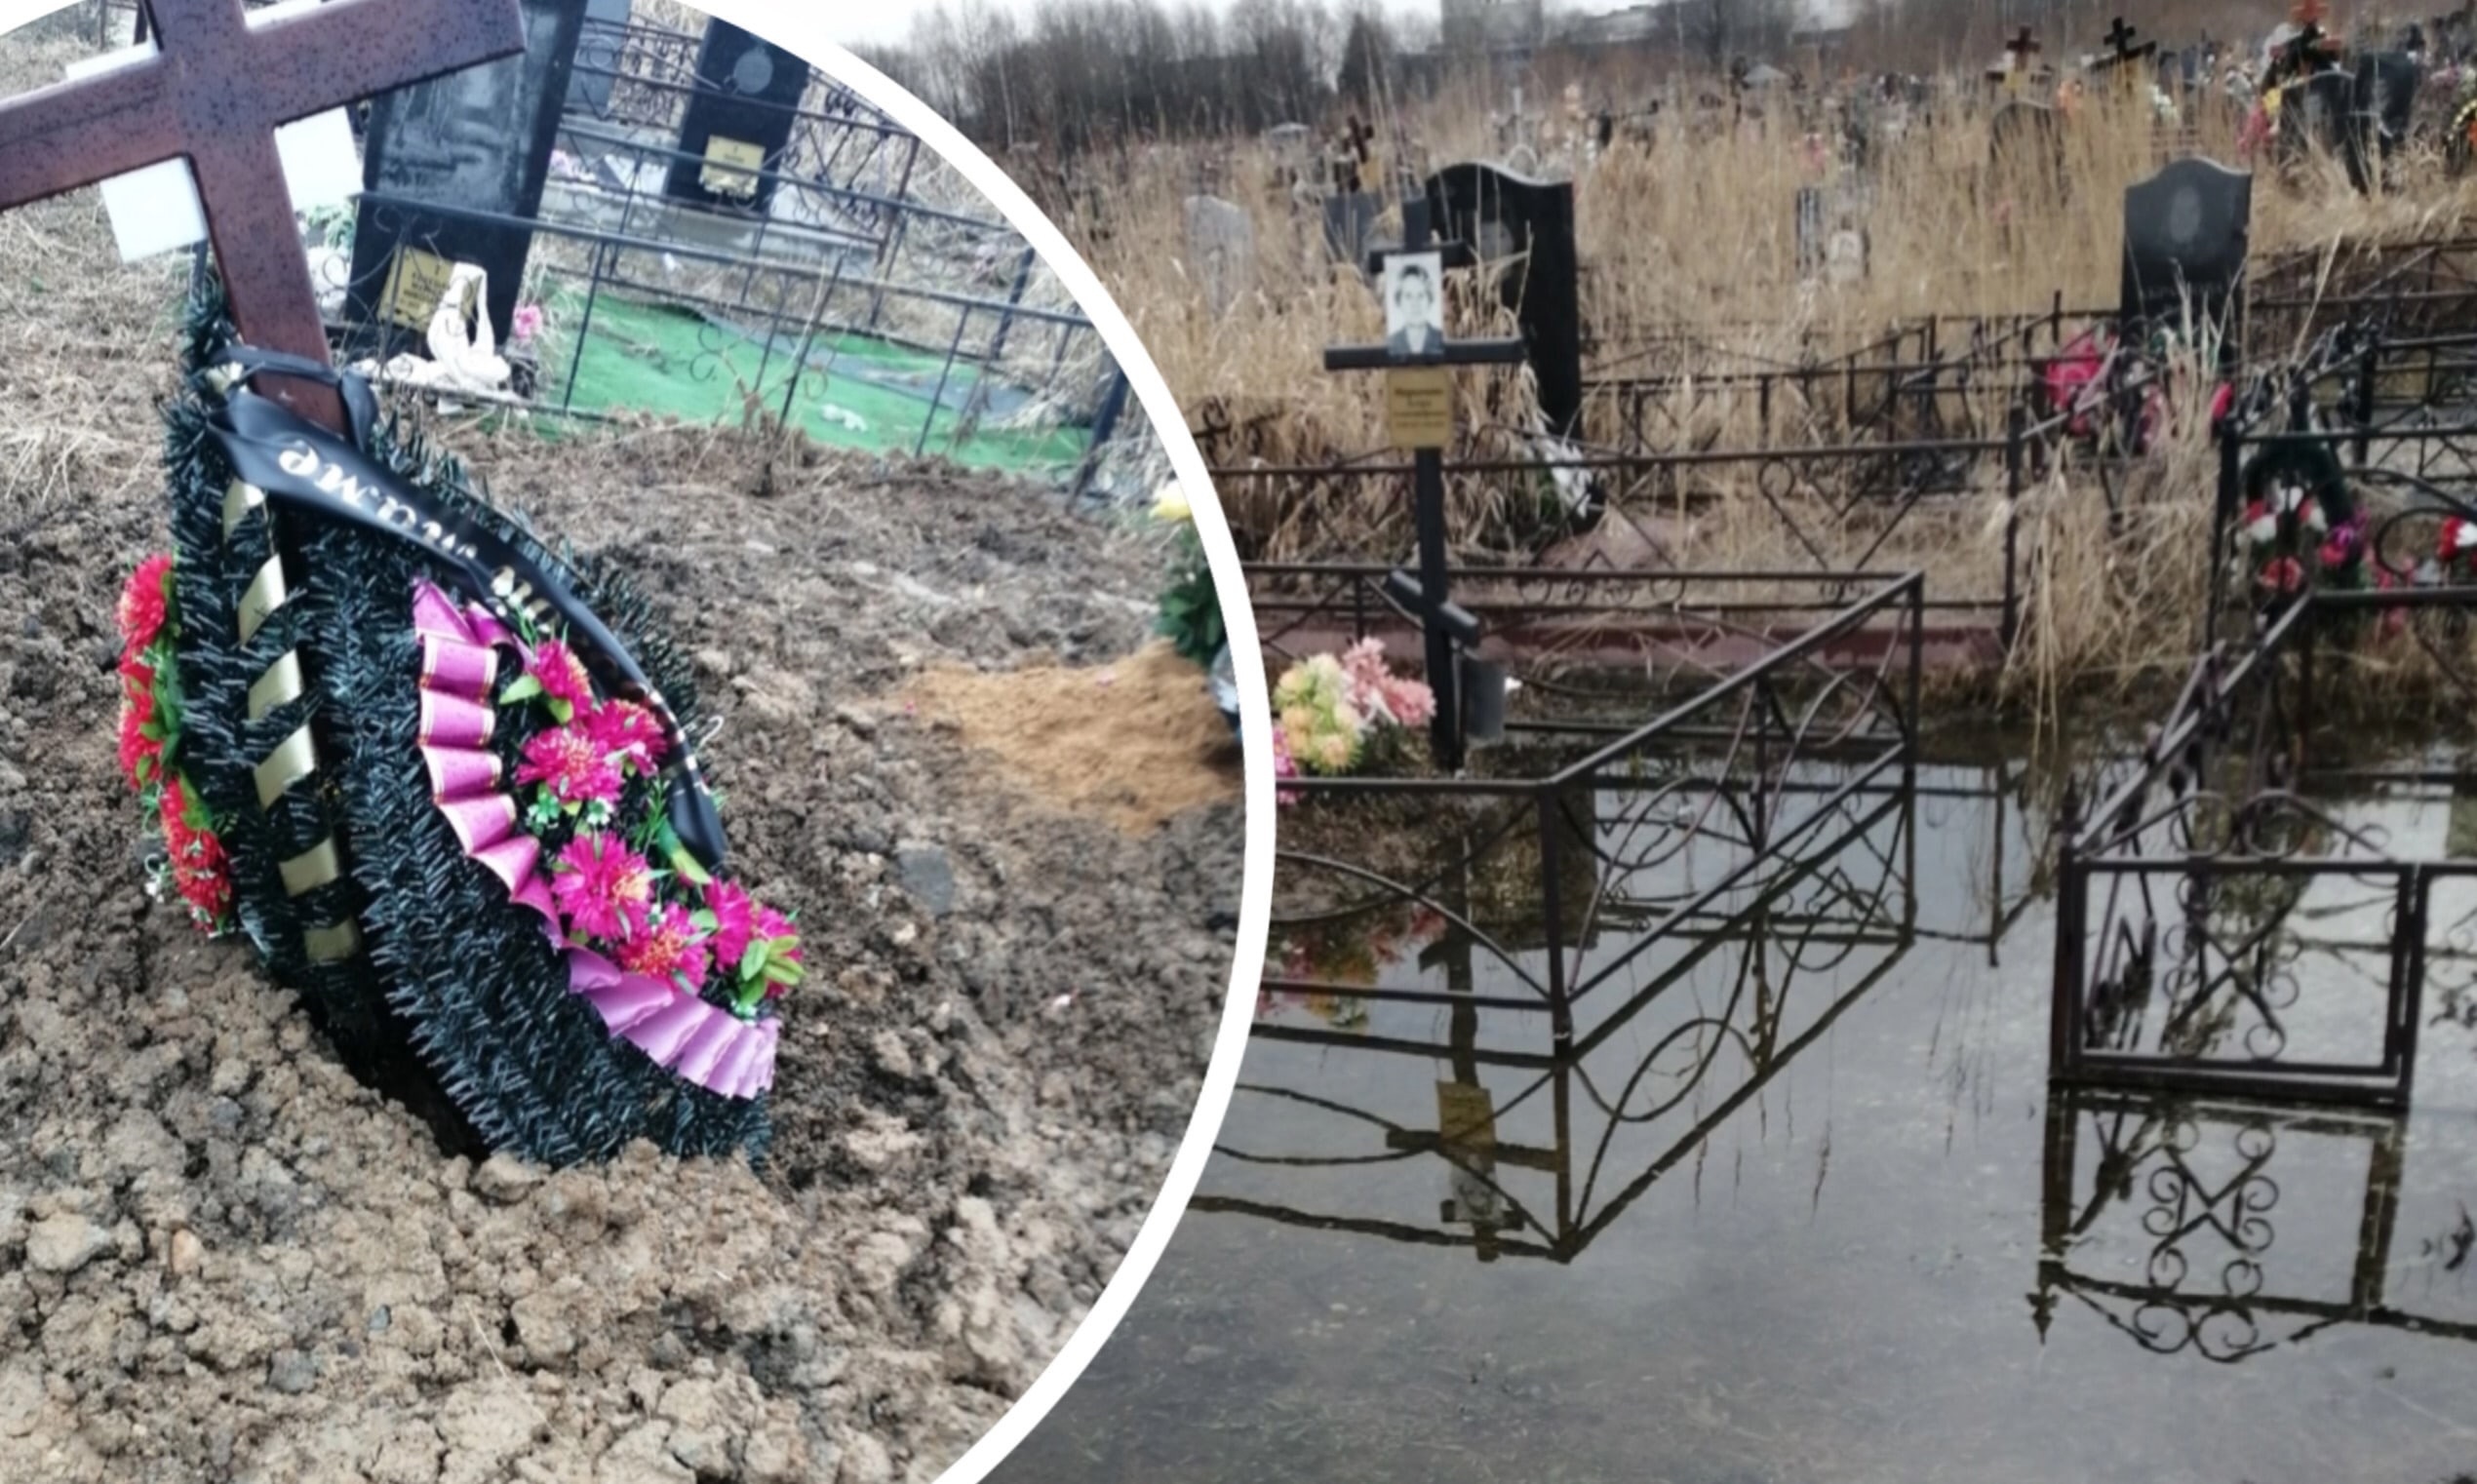 "И гробы выплывут с венками и оградой": в Ярославле затопило Осташинское кладбище